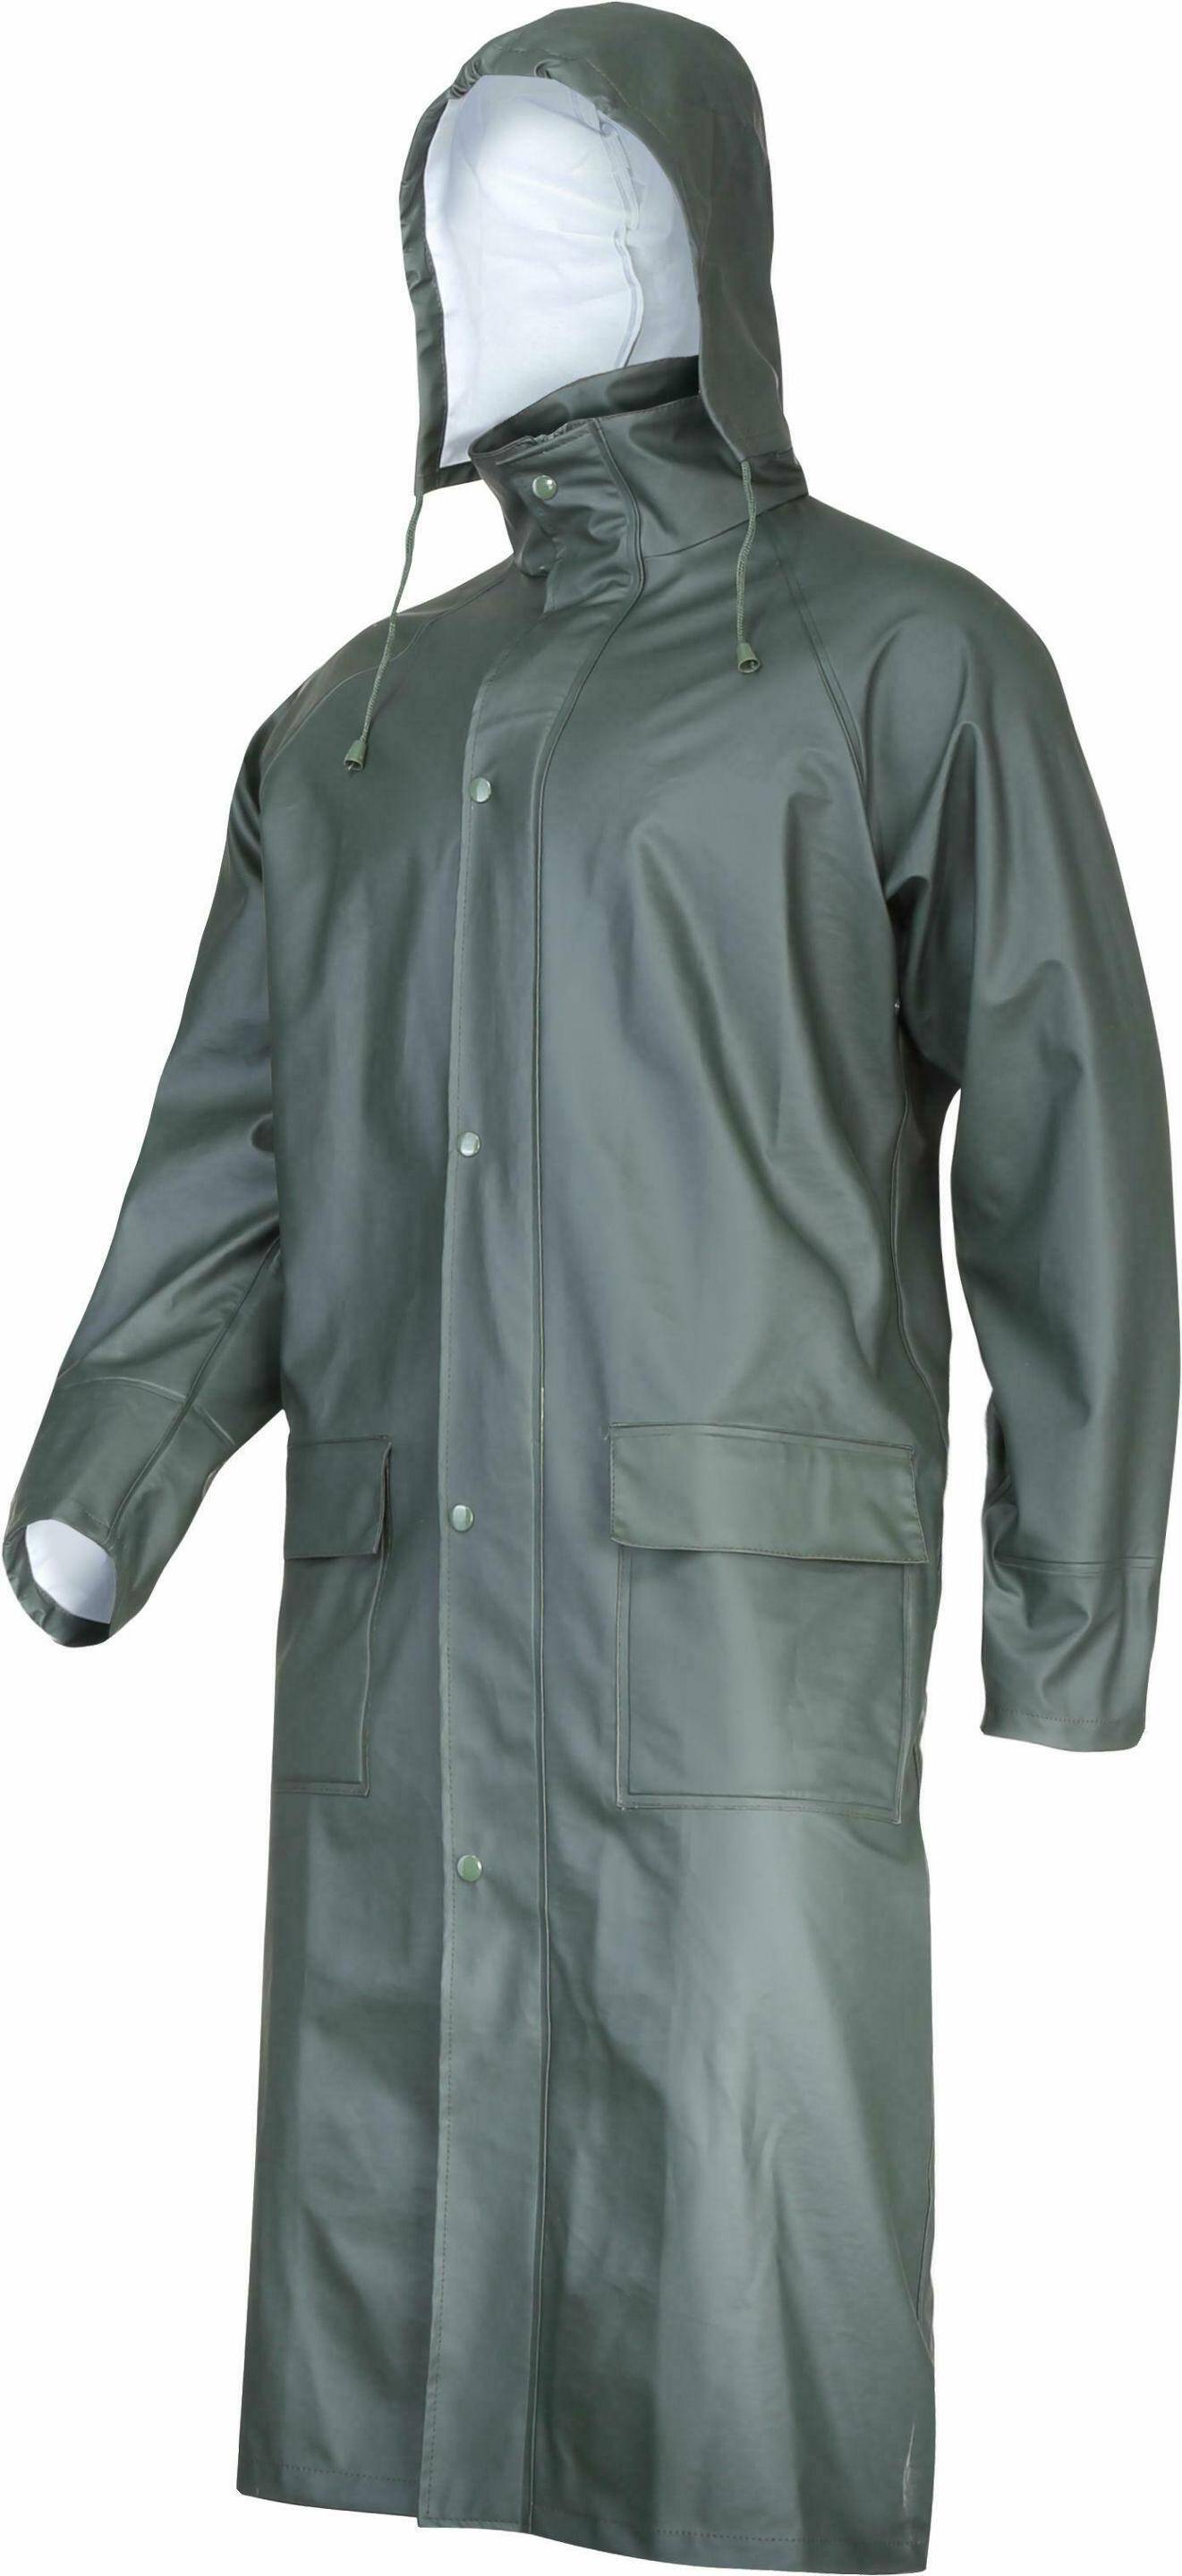 L41706 Płaszcz przeciwdeszczowy zielony